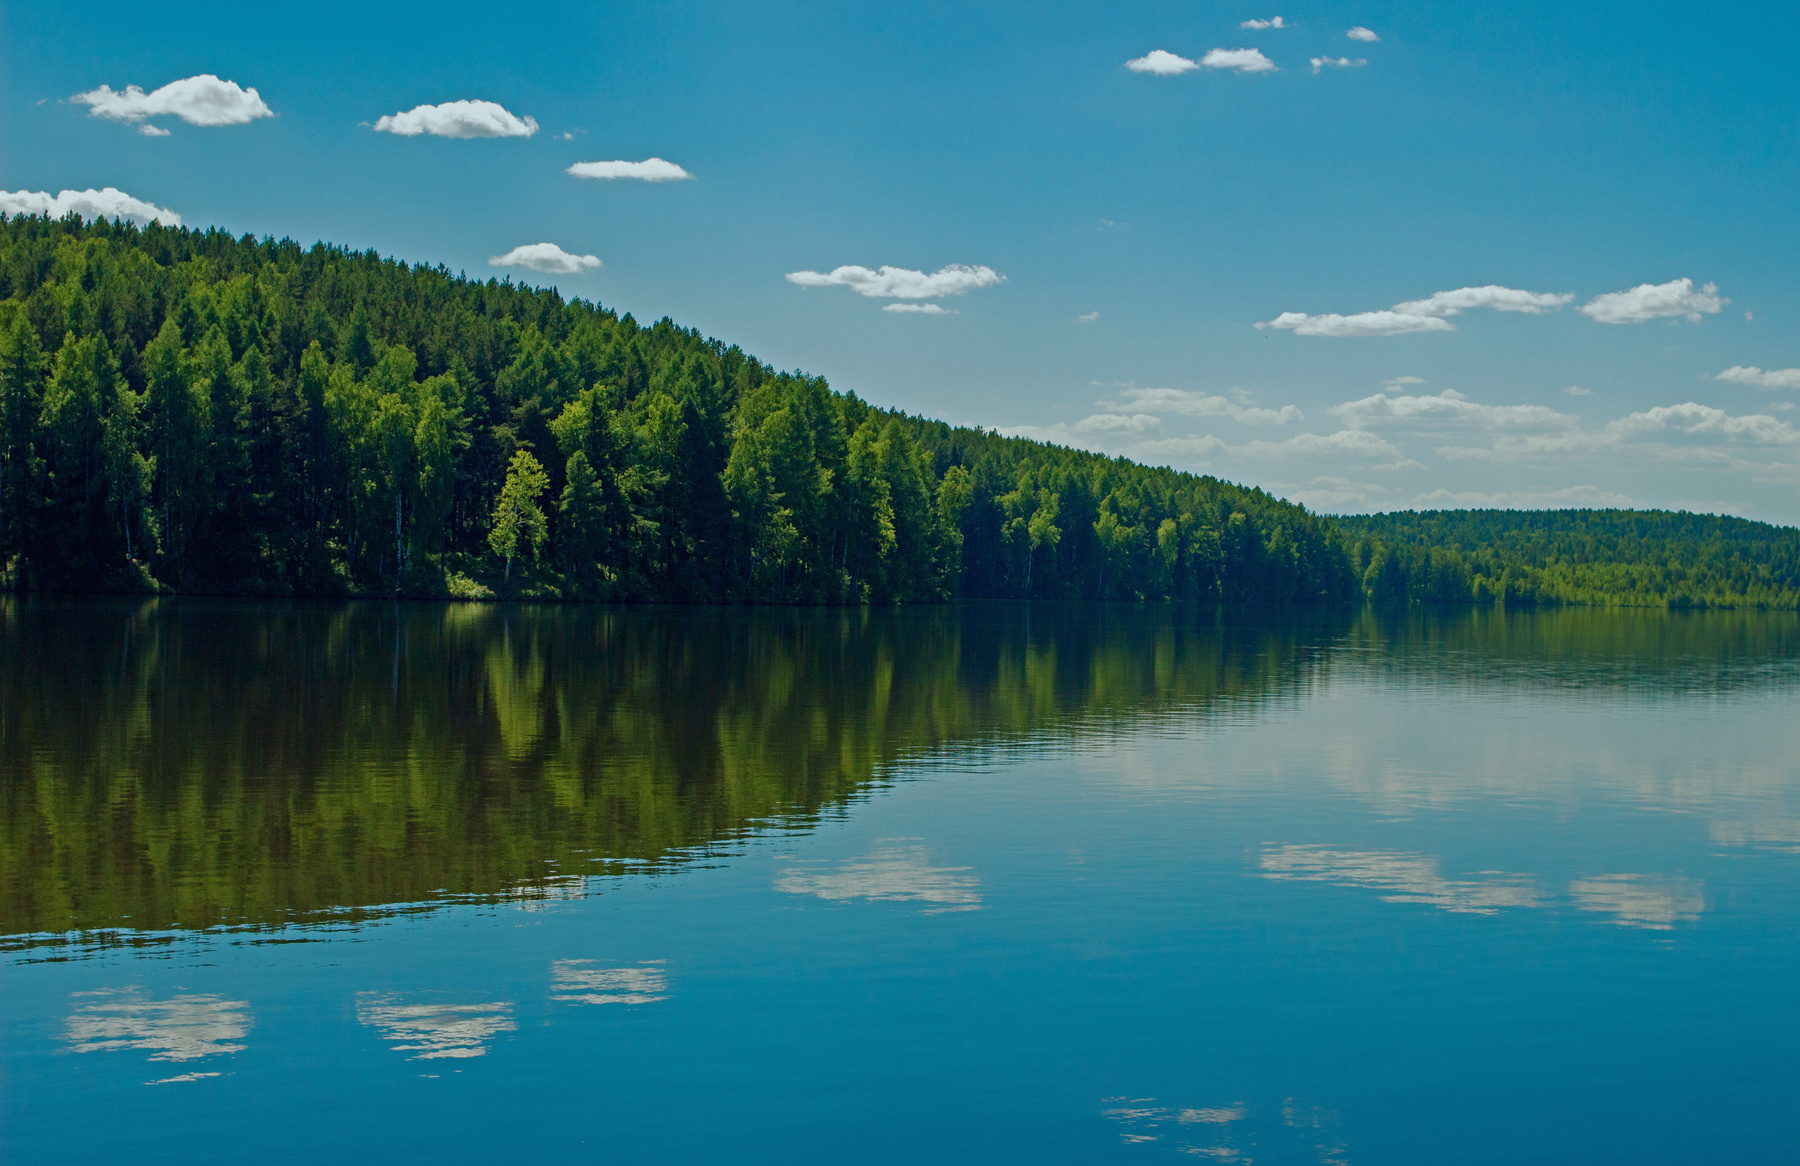 в нерабочий полдень россия урал природа пейзаж лето солнце река пруд лес деревья перспектива отражения